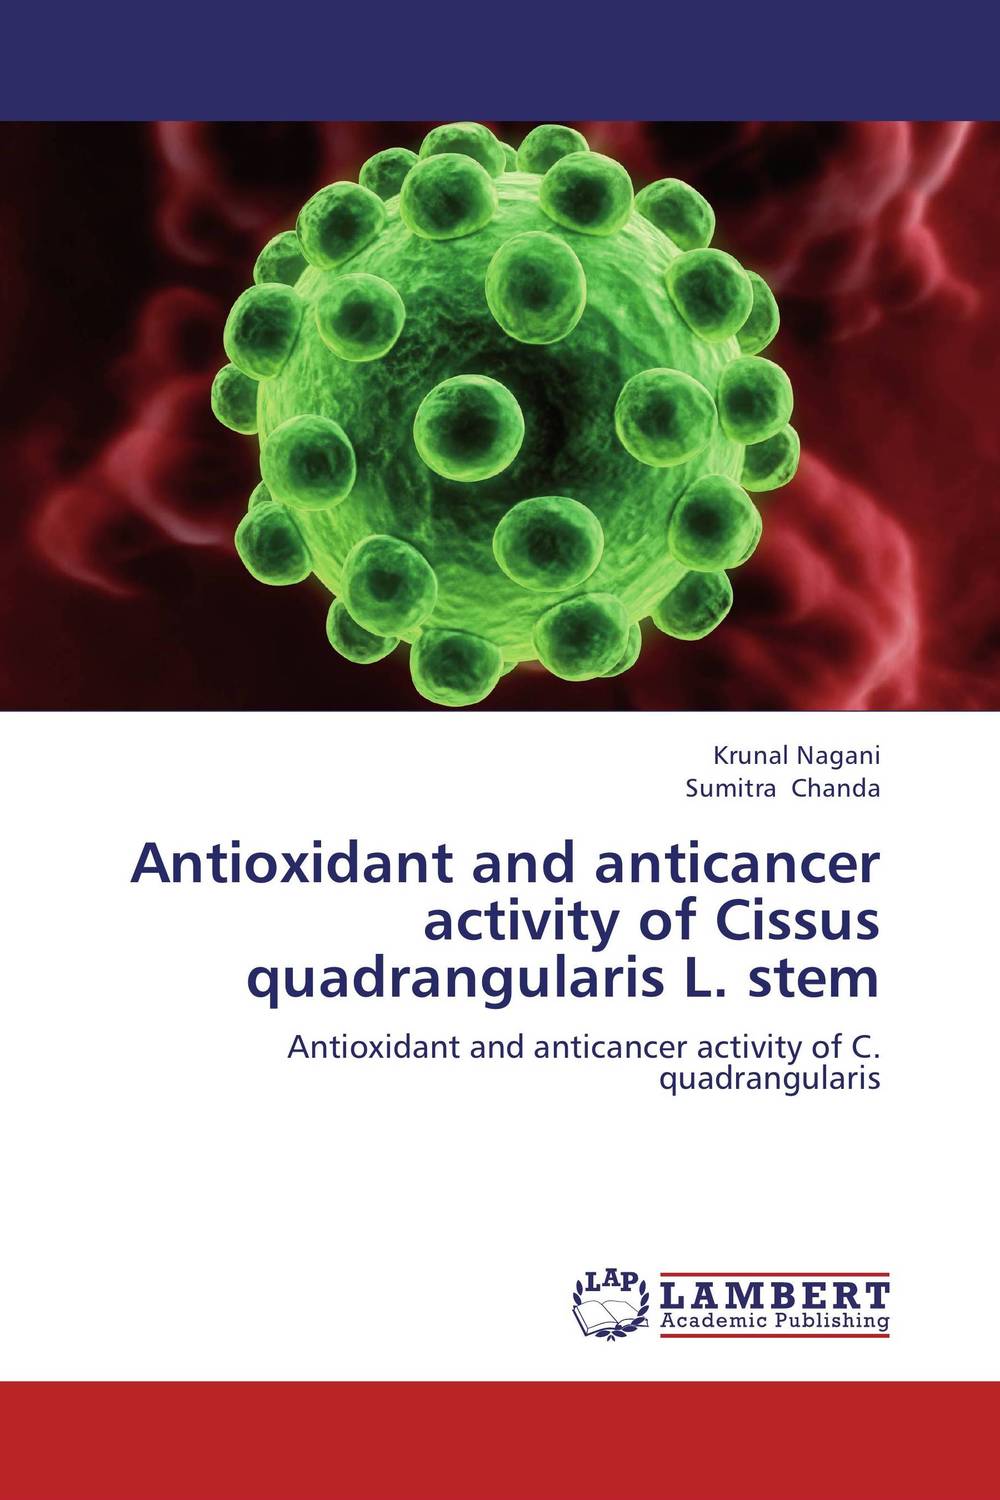 Antioxidant and anticancer activity of Cissus quadrangularis L. stem